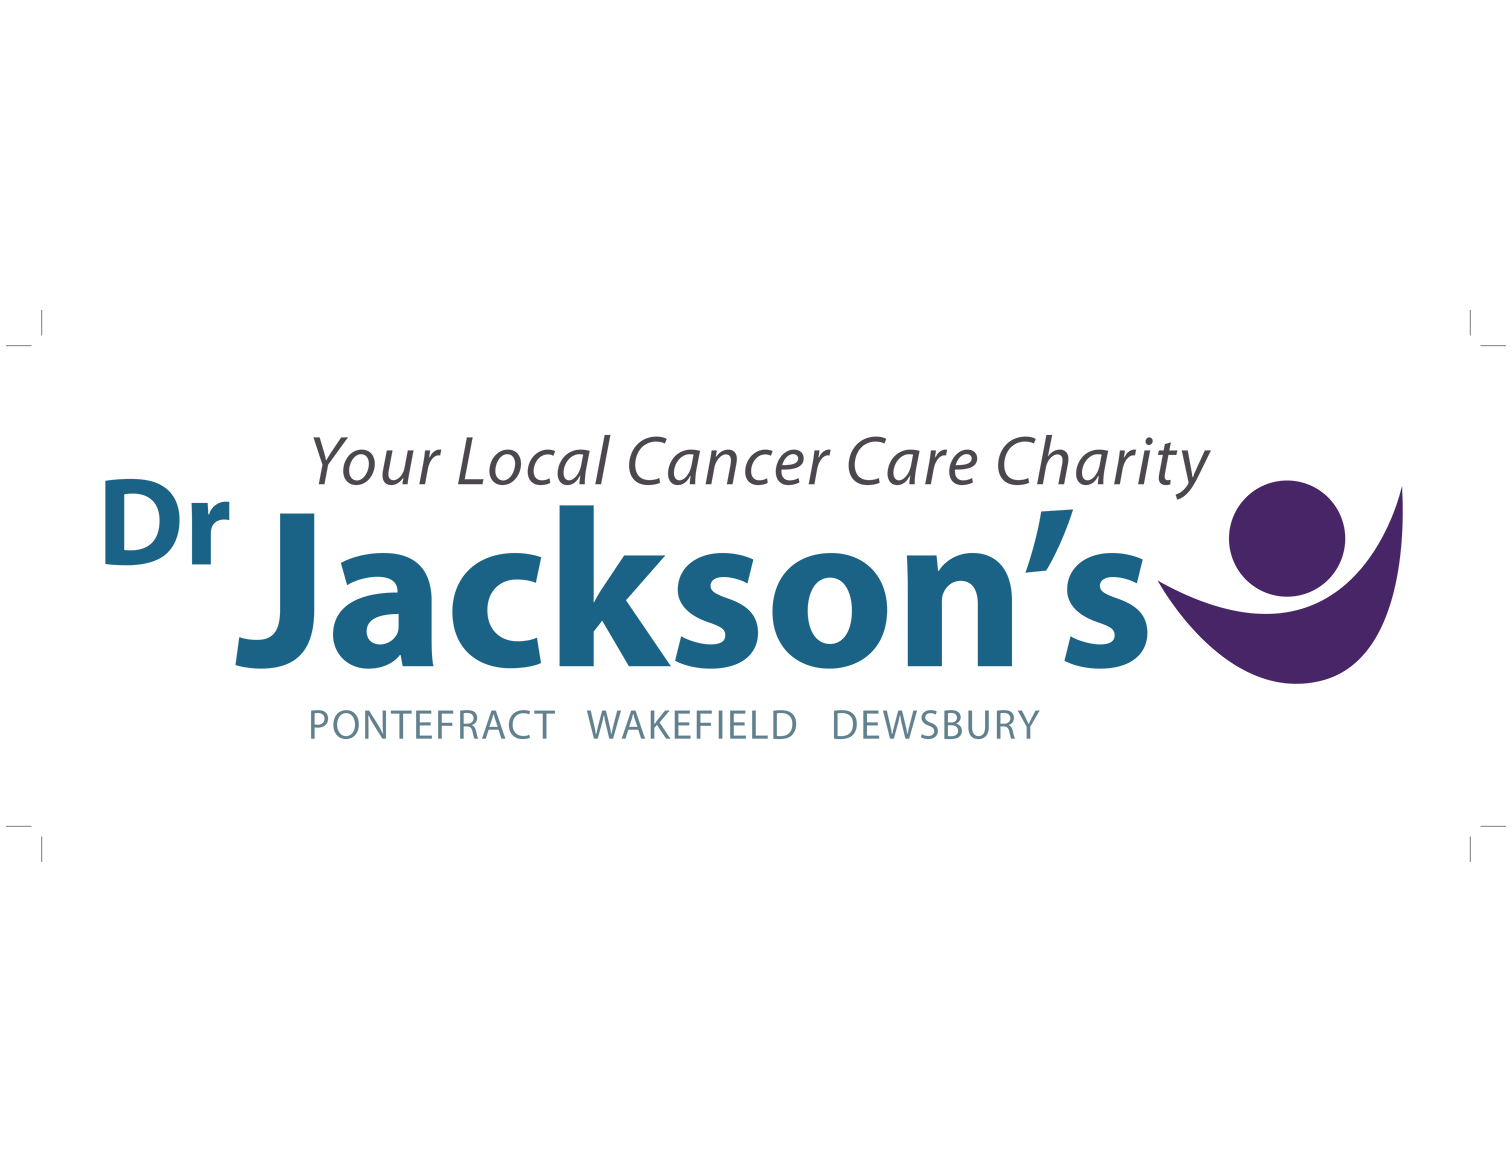 Dr Jacksons Cancer Fund